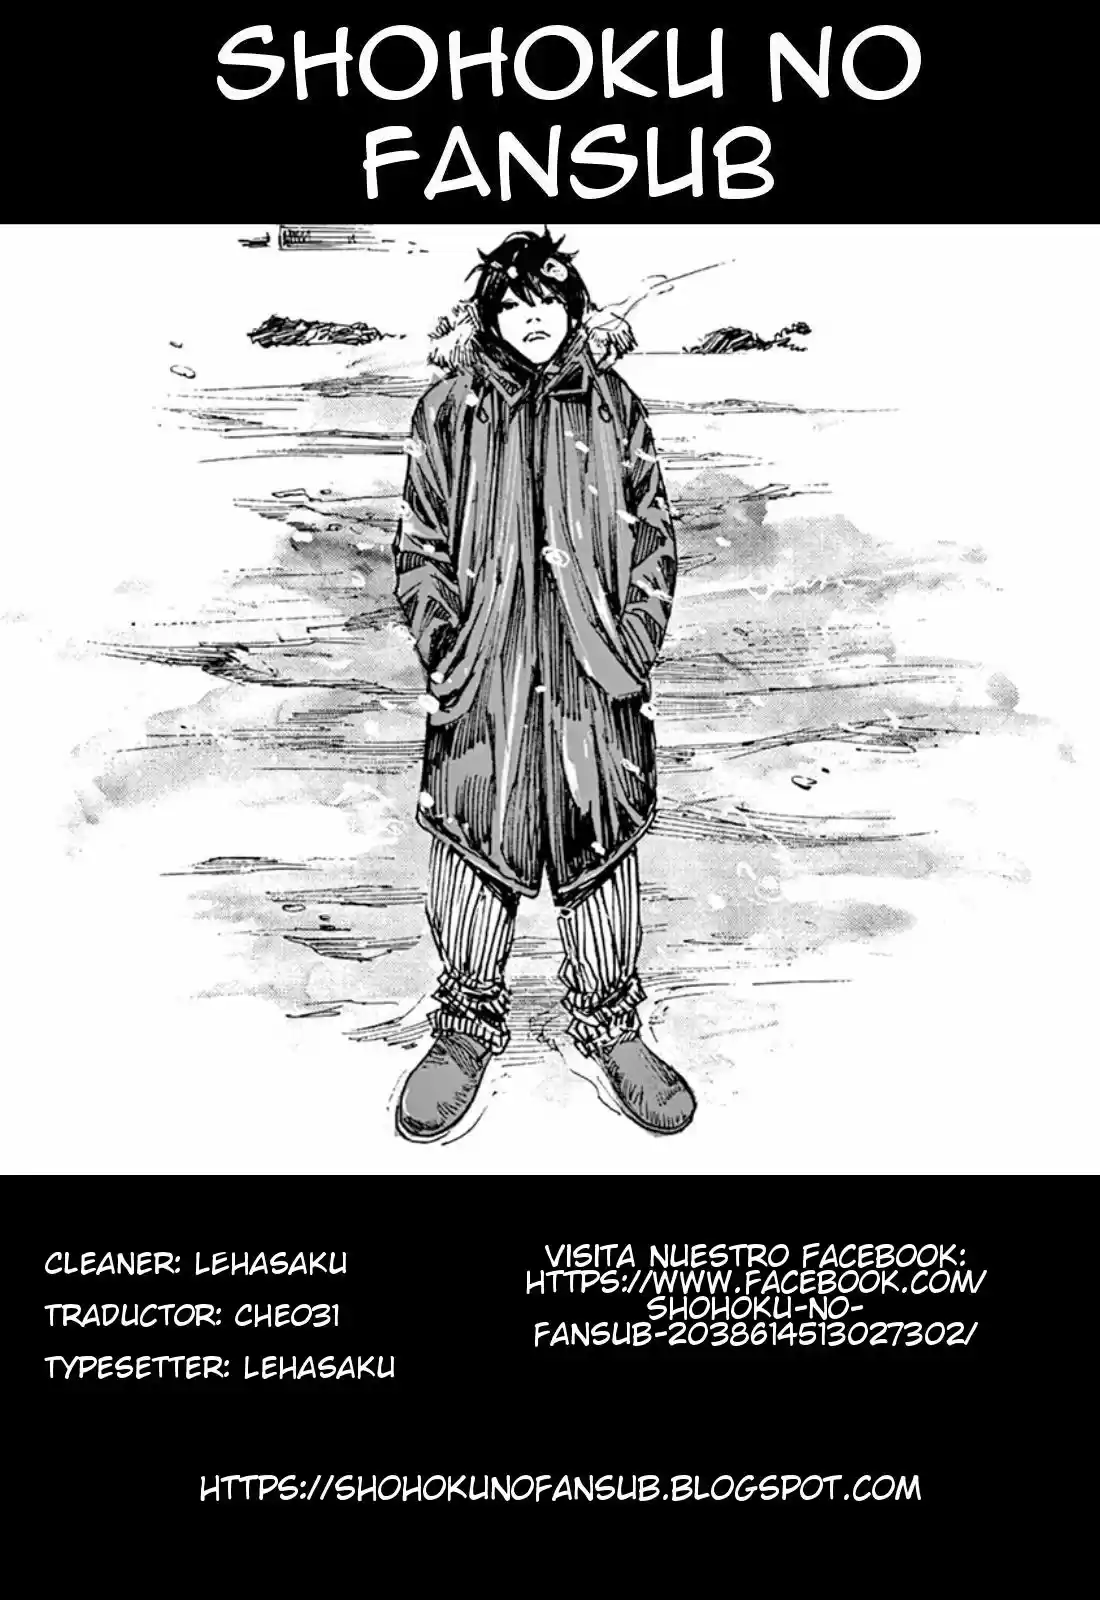 Zankyou: Chapter 2 - Page 1